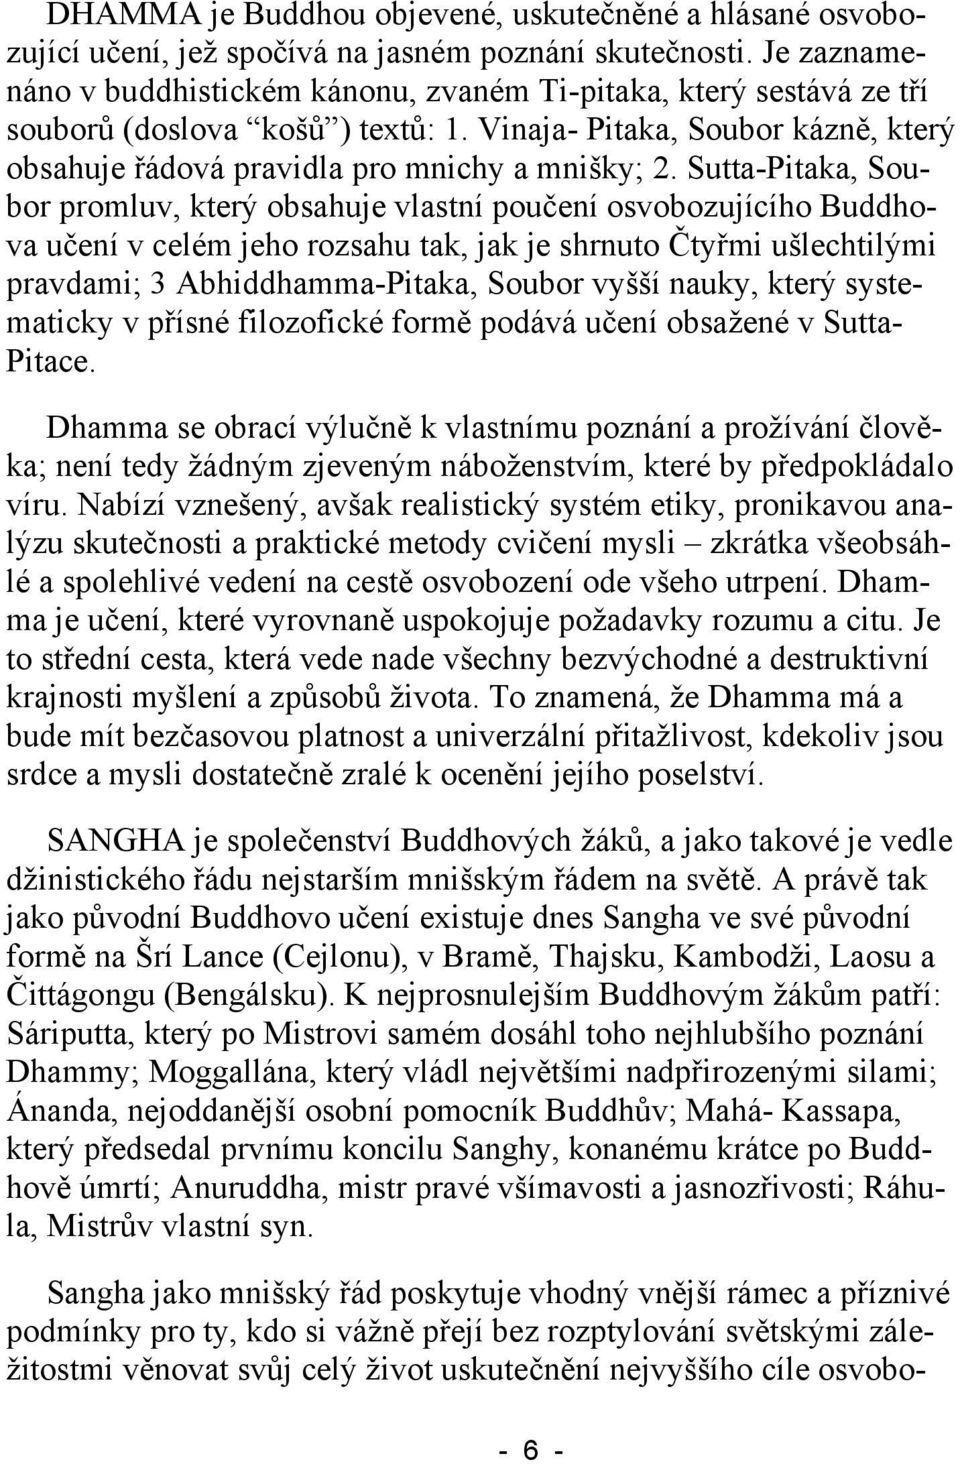 Sutta-Pitaka, Soubor promluv, který obsahuje vlastní poučení osvobozujícího Buddhova učení v celém jeho rozsahu tak, jak je shrnuto Čtyřmi ušlechtilými pravdami; 3 Abhiddhamma-Pitaka, Soubor vyšší